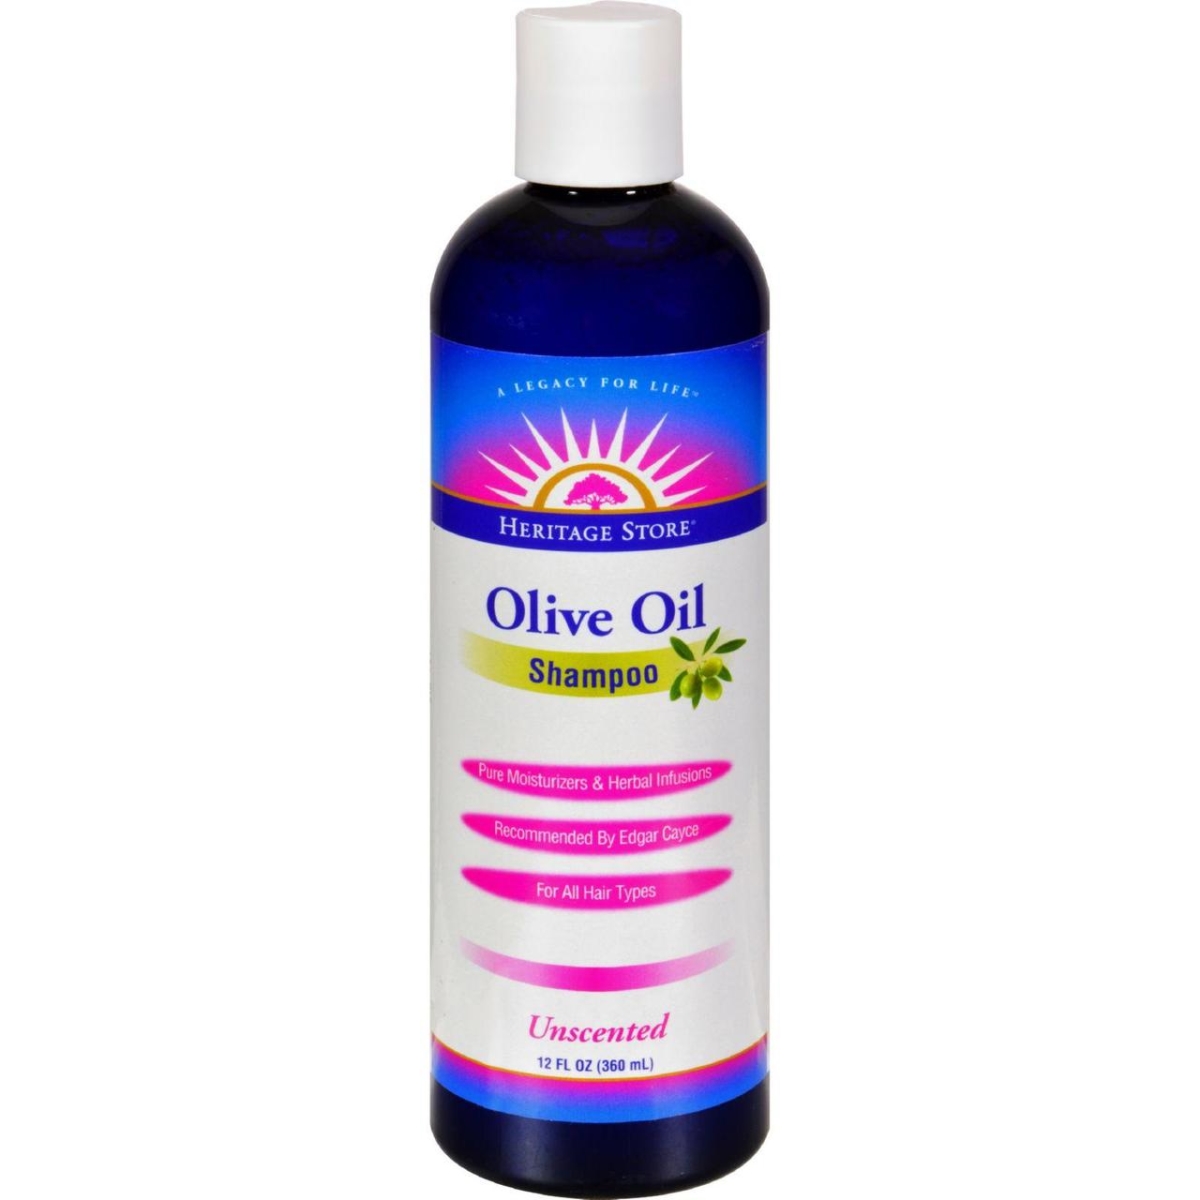 Hg1163963 12 Oz Olive Oil Shampoo - Unscented